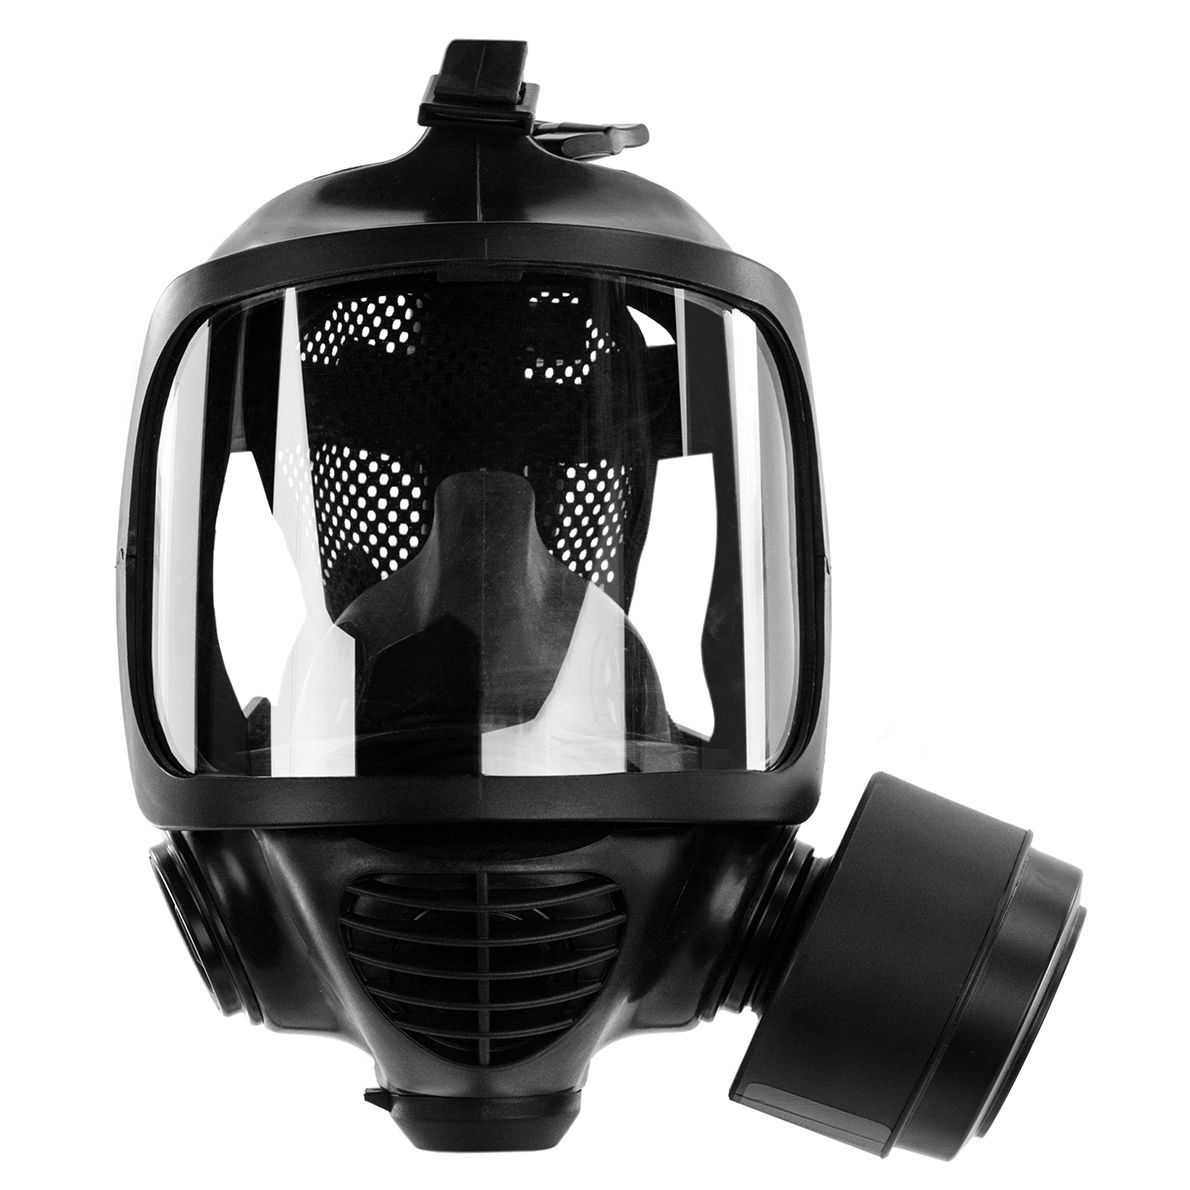 ACE Calypso CM-6 Vollmaske - Atemschutz-Maske für Arbeit & Notfall - Rd40-Anschluss für zwei Filter